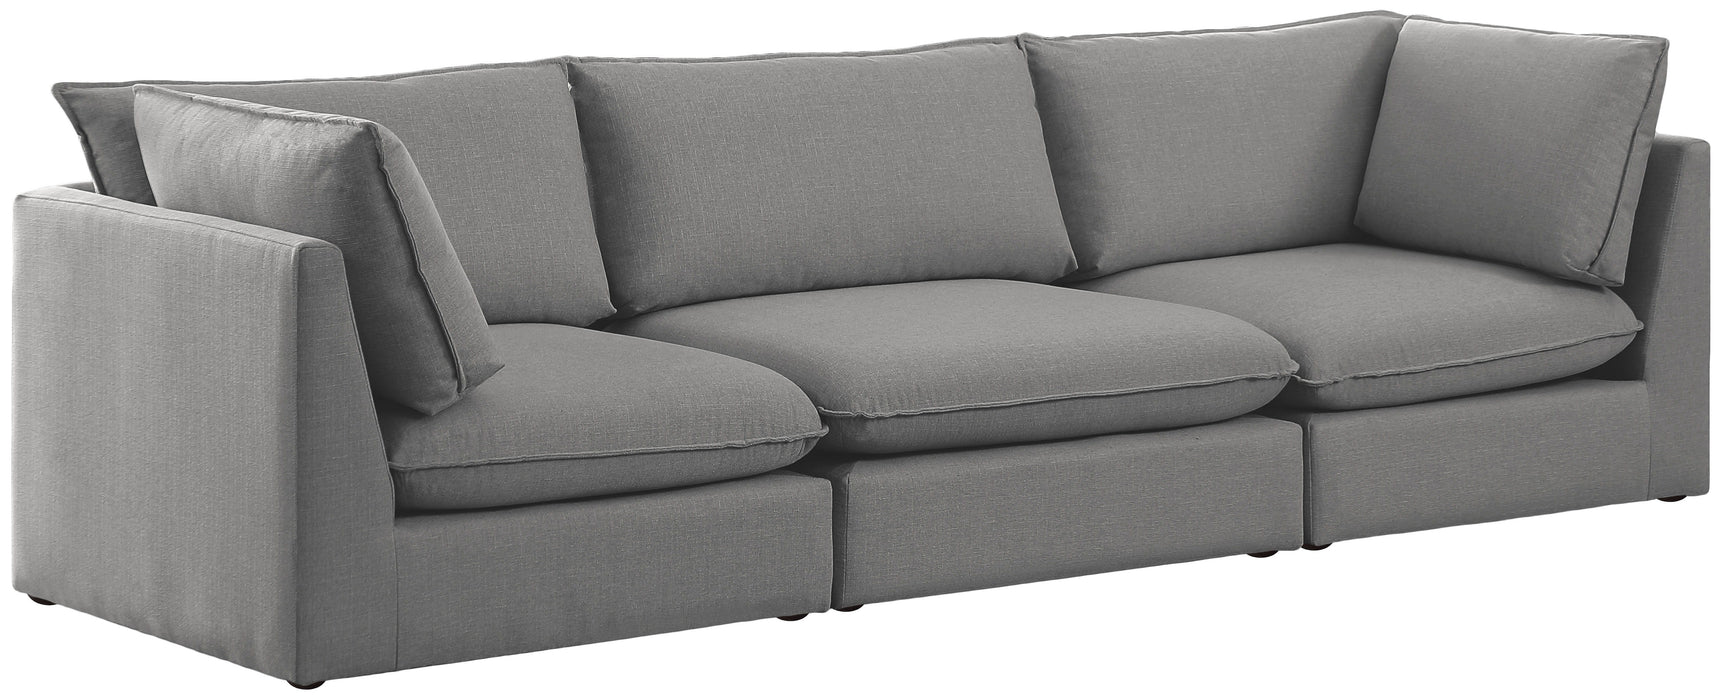 Mackenzie - Modular Sofa 3 Seats